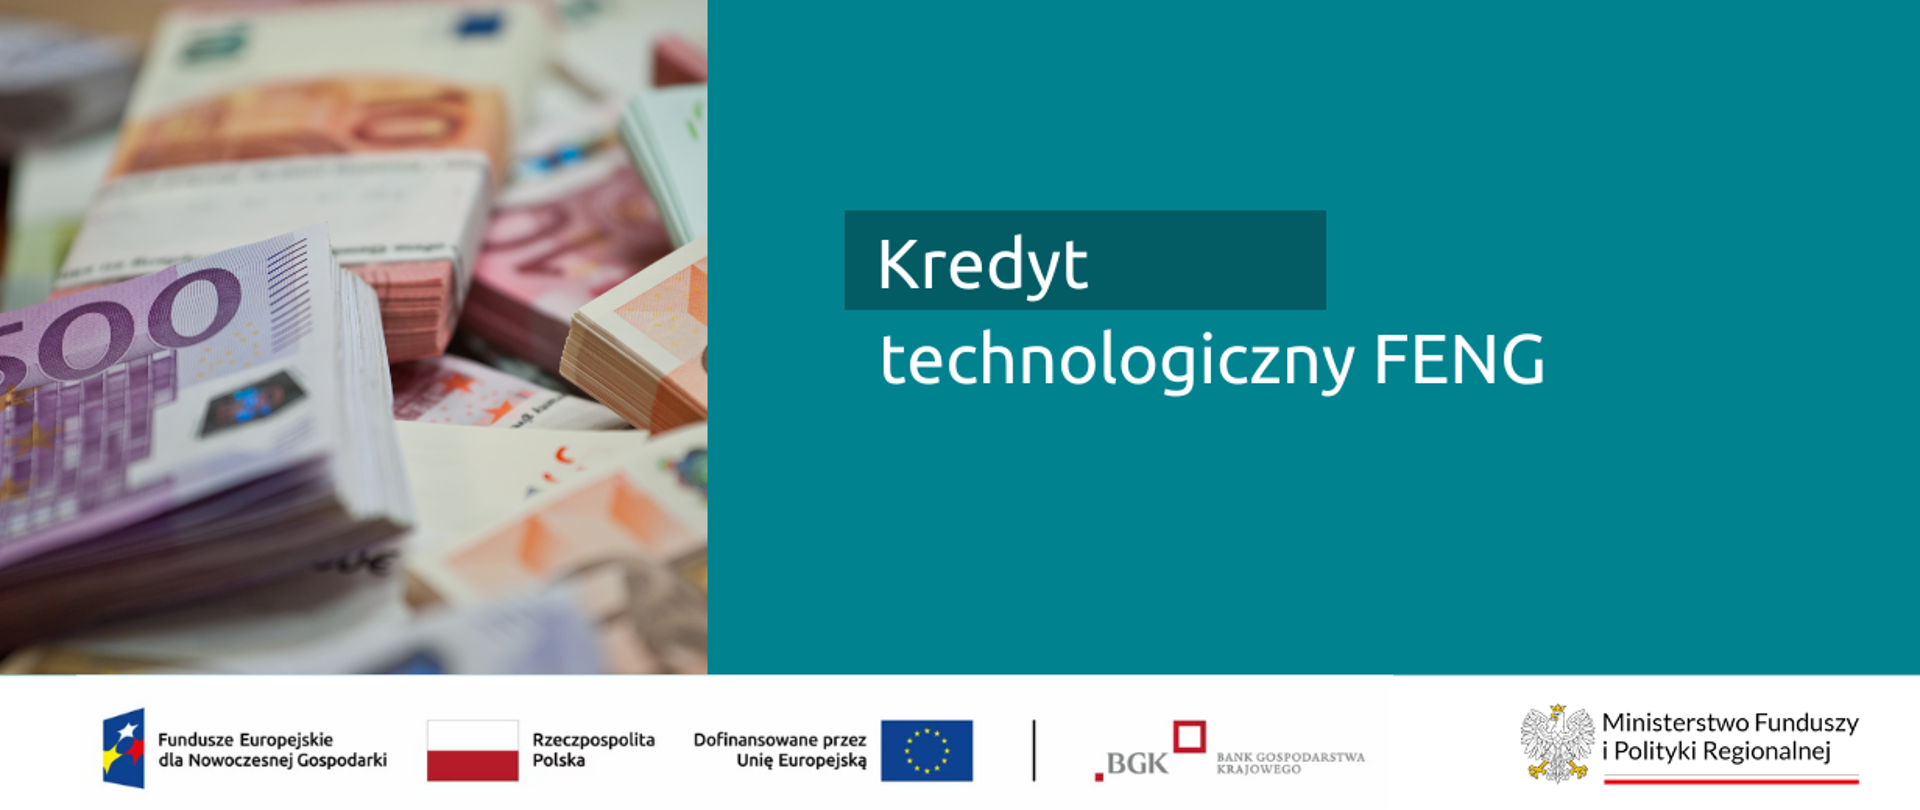 Nabór wniosków w konkursie „Kredyt technologiczny” w Programie Fundusze Europejskie dla Nowoczesnej Gospodarki
